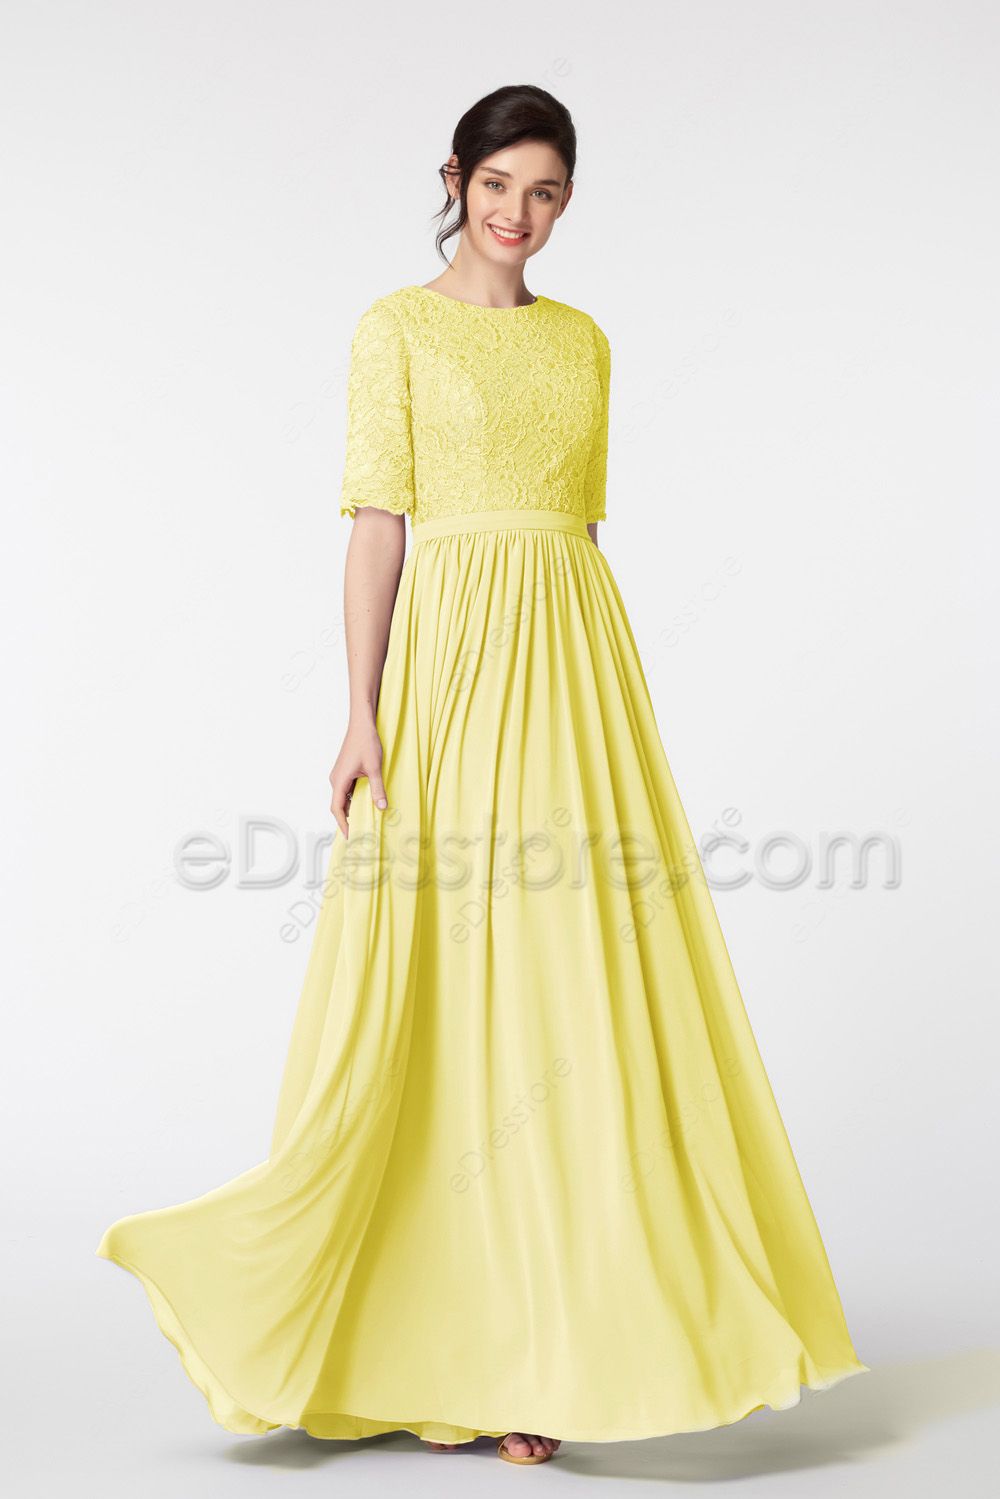 Summer Hanfu Dress Light Yellow Dress - Fashion Hanfu